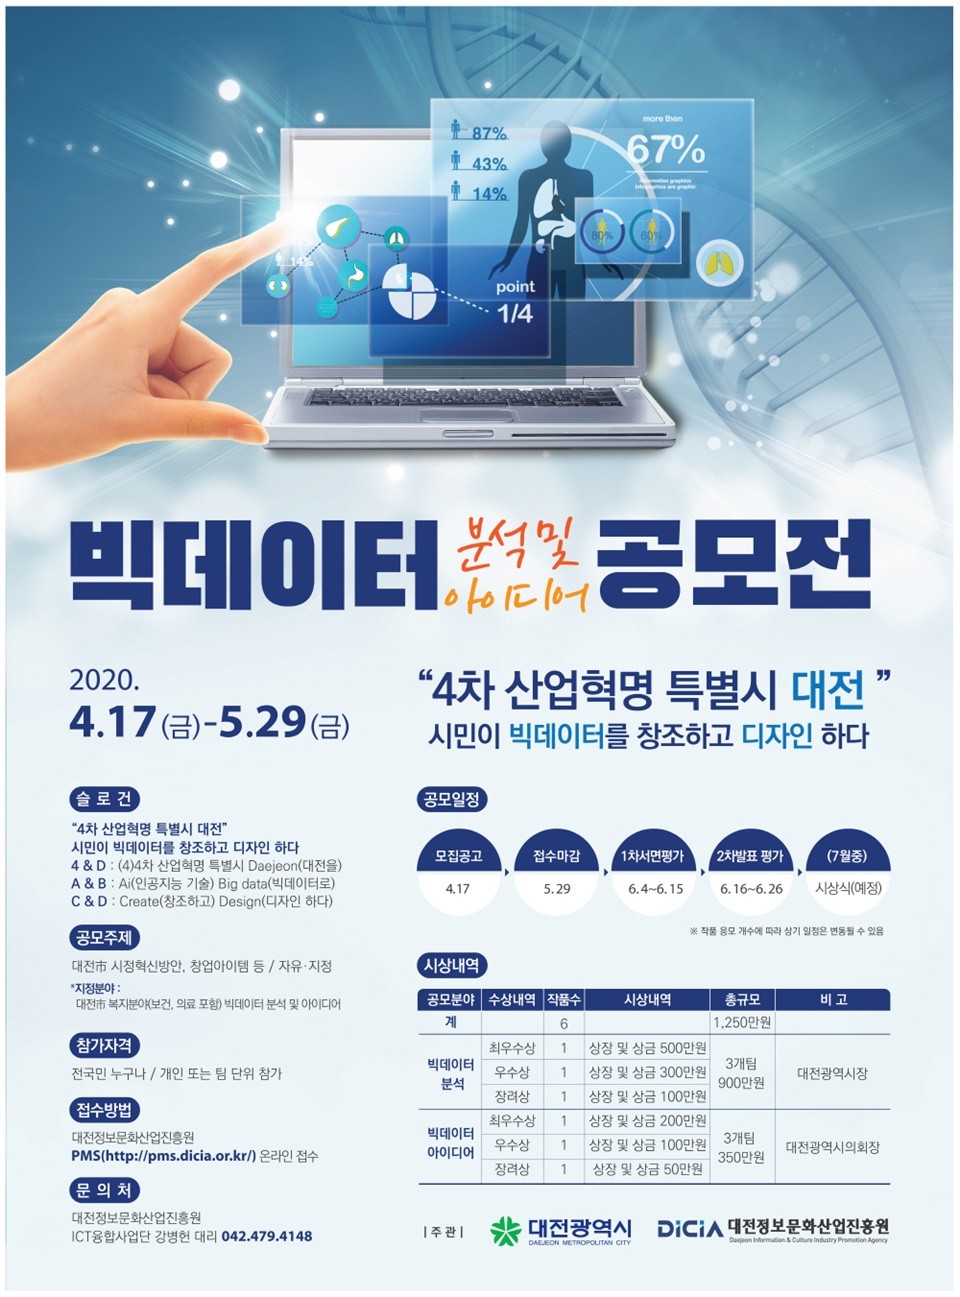 대전시와 (재)대전정보문화산업진흥원은 ‘2020 빅데이터 분석 및 아이디어 공모전’을 개최한다. 대전시 2020 빅데이터 분석 및 아이디어 공모전 홍보포스터./ⓒ대전시